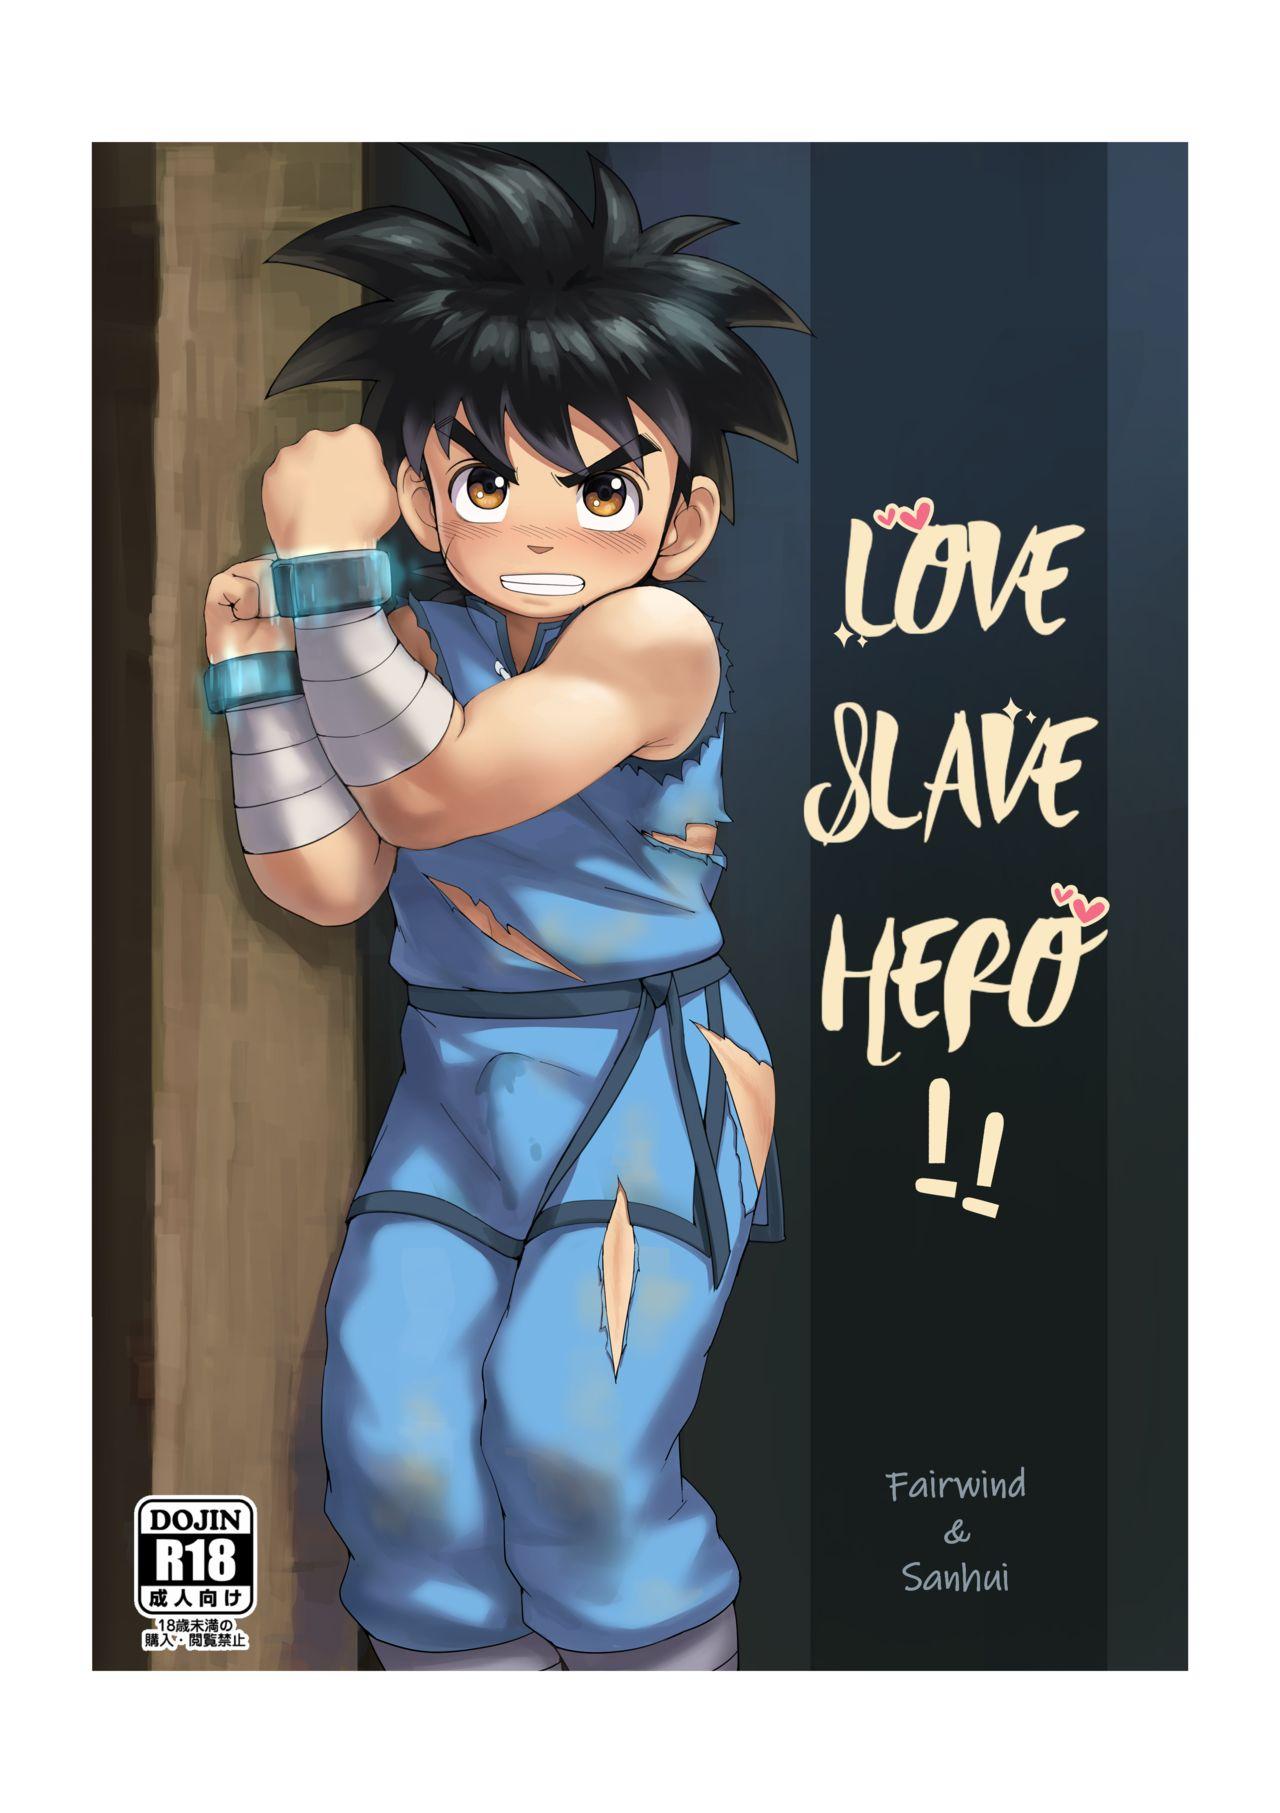 Love Slave Hero 0